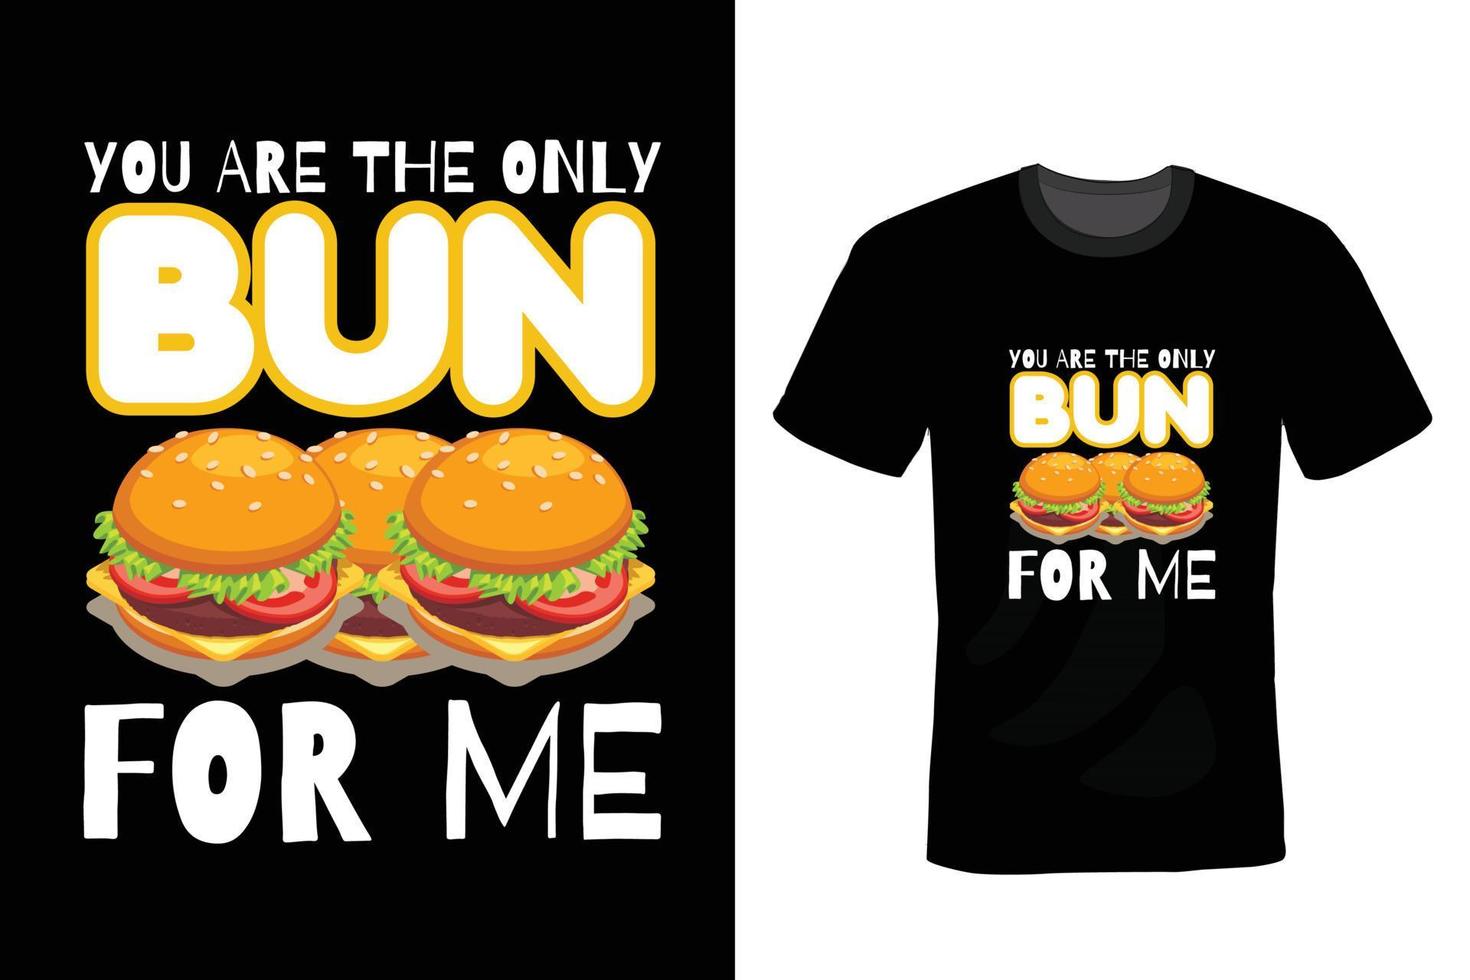 diseño de camiseta de hamburguesa, tipografía, vintage vector